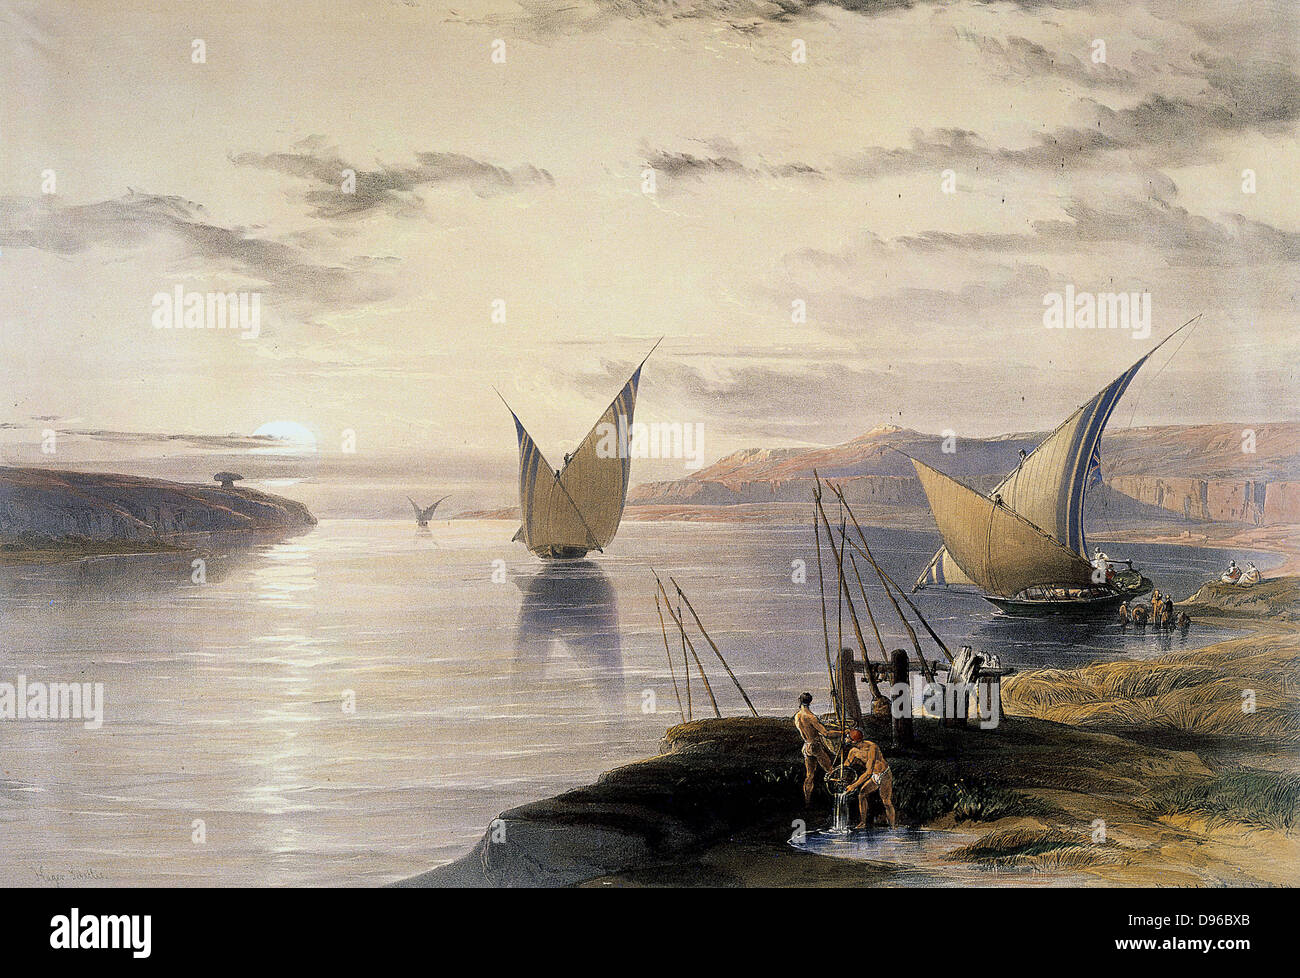 David Roberts (1796-1864) Britische (Schottische) Künstler. "Boote auf dem Nil" Aquarell. Rechts unten, Wasser wird durch eine shaduf angehoben. Victoria & Albert Museum, London Stockfoto